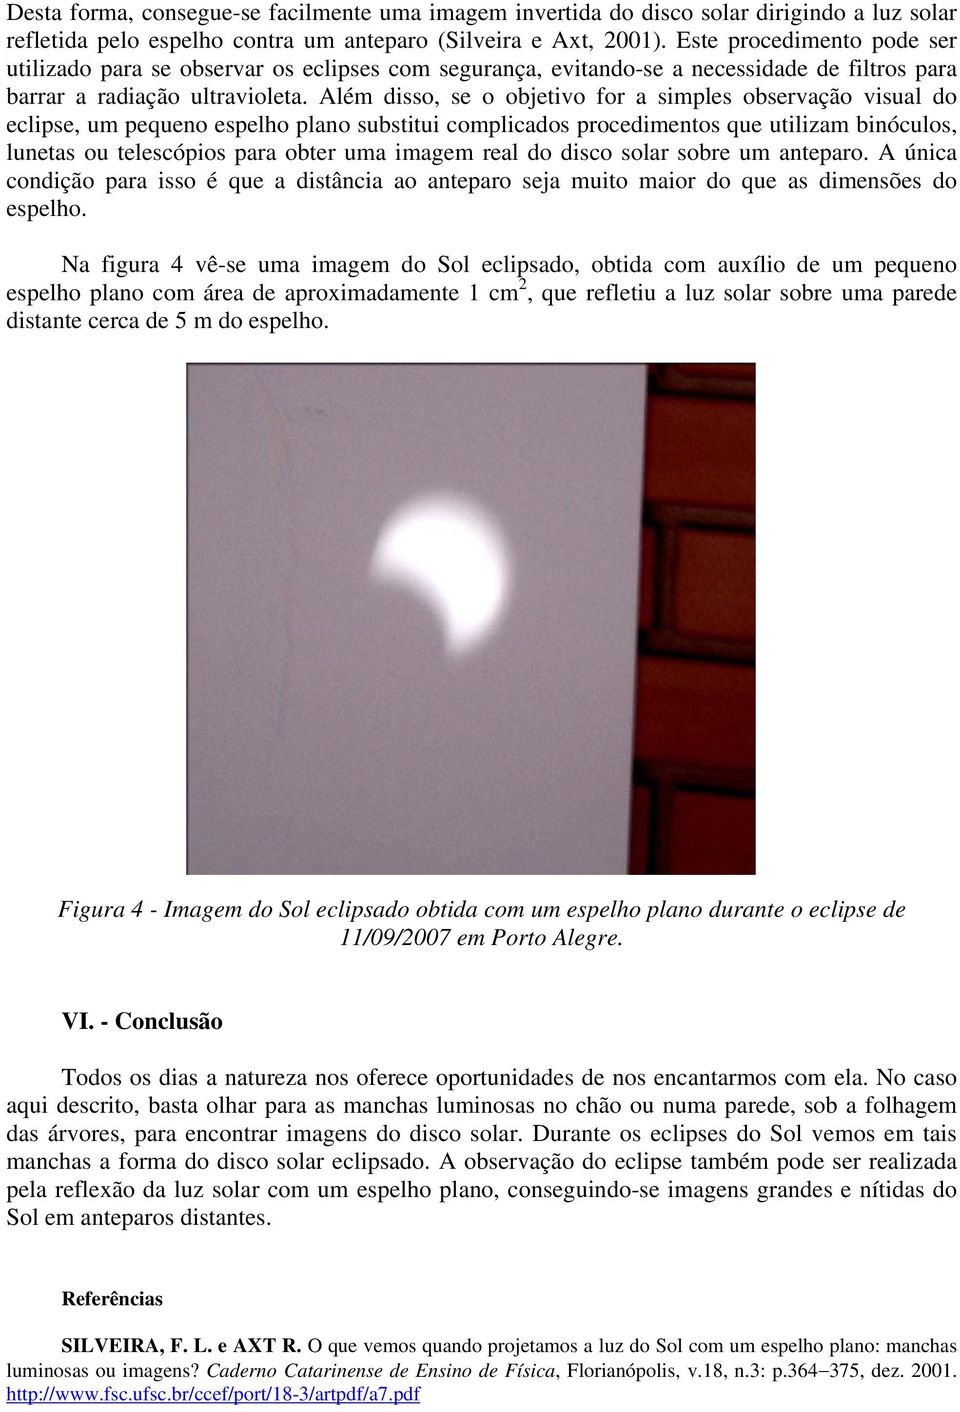 Além disso, se o objetivo for a simples observação visual do eclipse, um pequeno espelho plano substitui complicados procedimentos que utilizam binóculos, lunetas ou telescópios para obter uma imagem